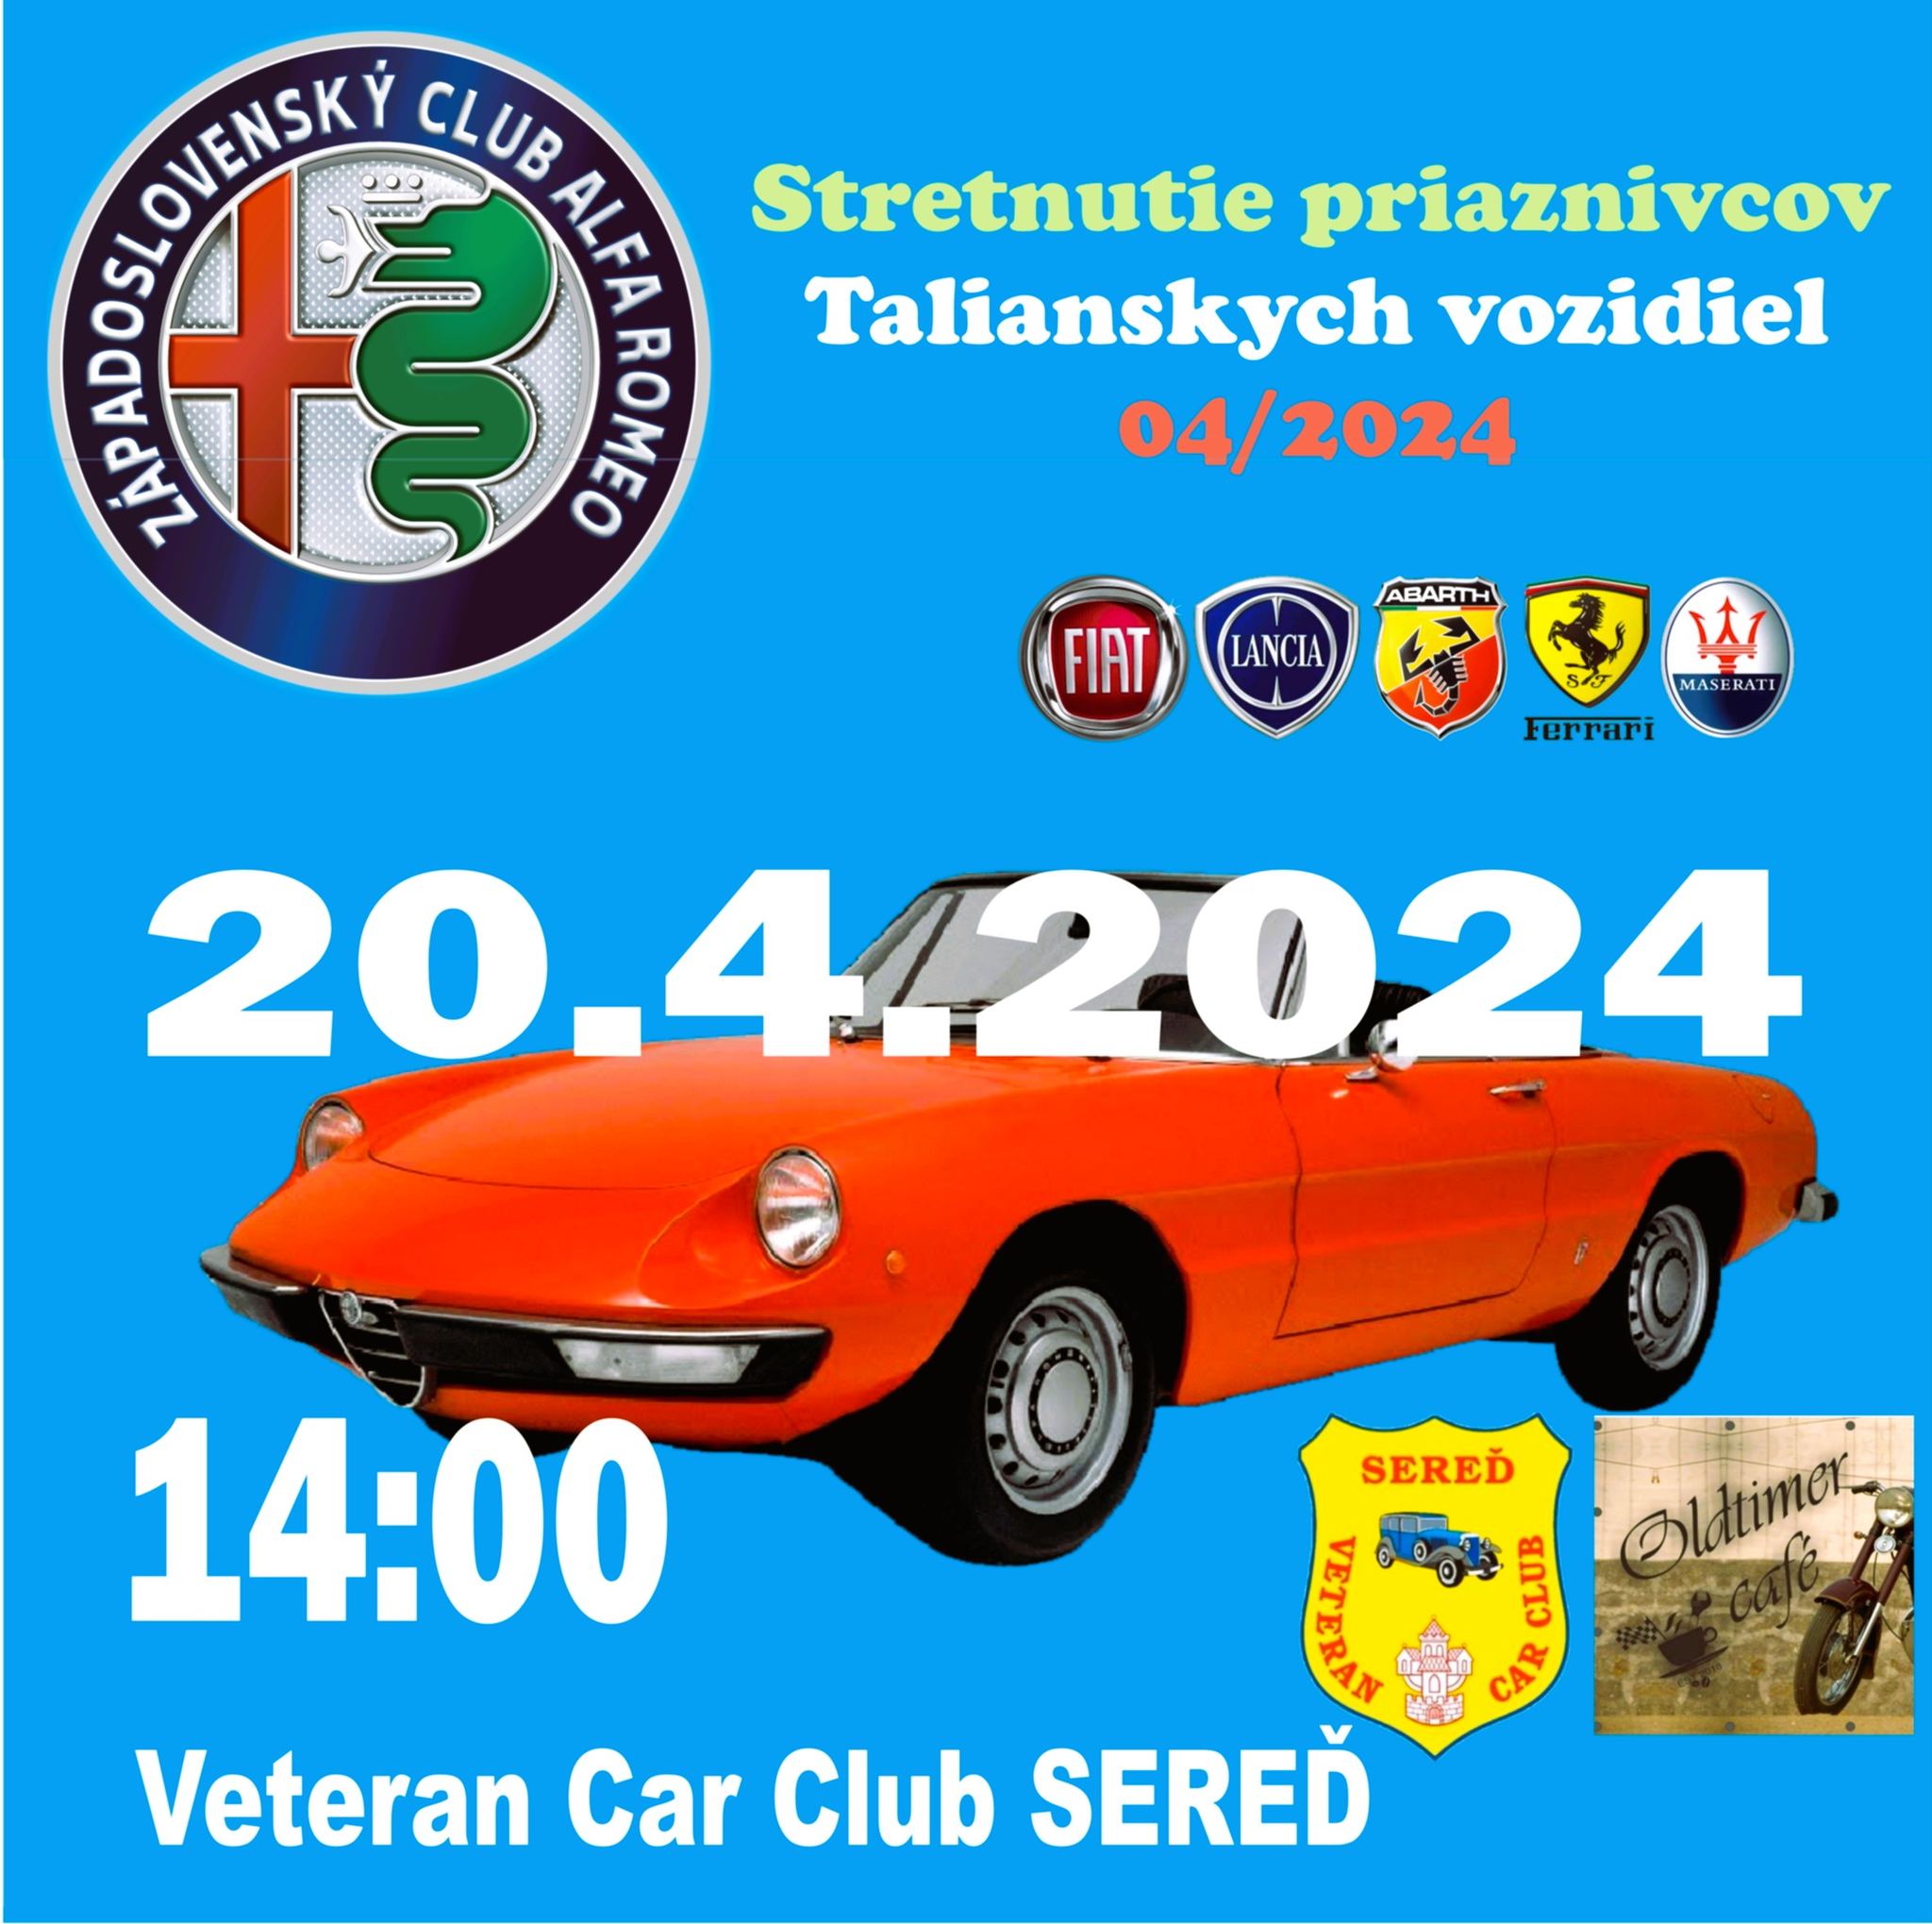 20.04.2024 Stretnutie priaznivcov Talianskych vozidiel 04/2024 (Veteran car club Sereď)